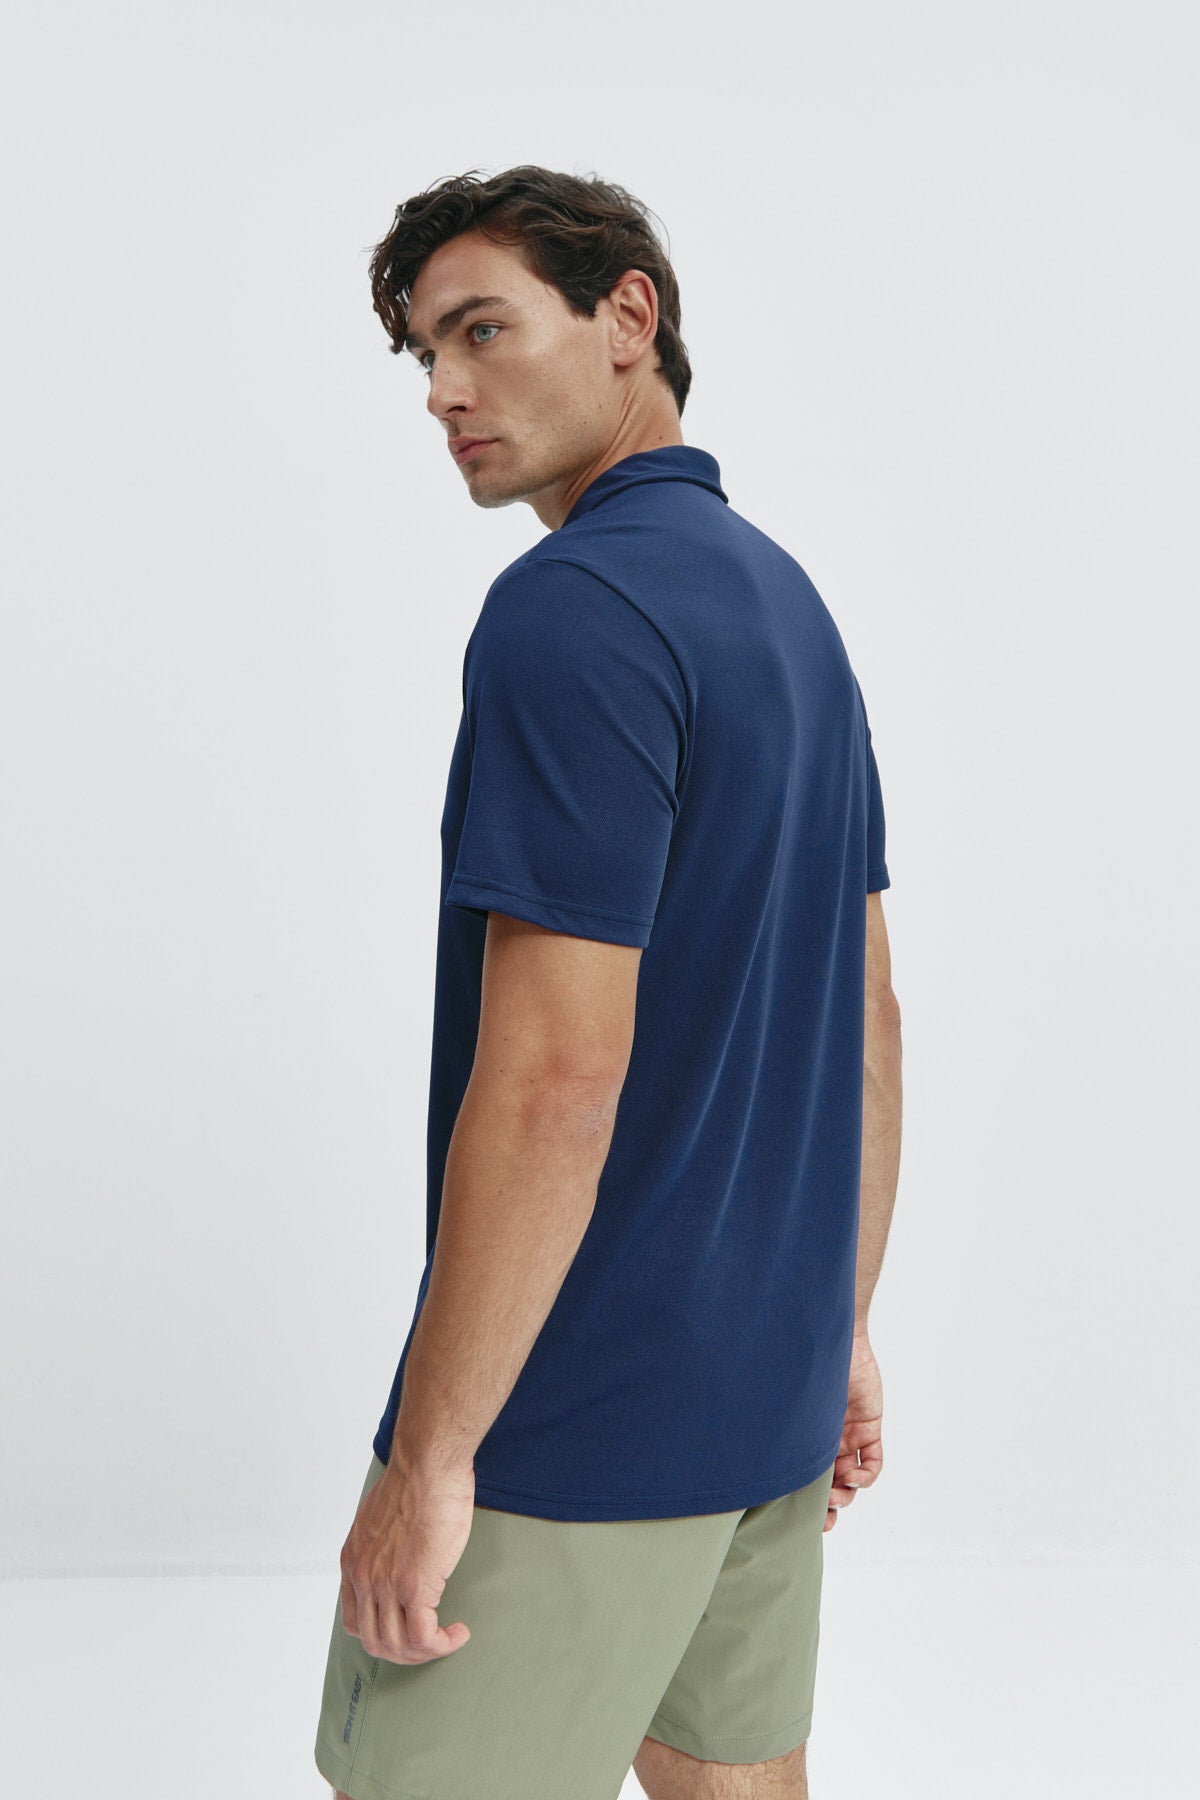 Polo manga corta para hombre en azul marino de Sepiia, versatilidad y elegancia en una prenda clásica. Foto de espalda.